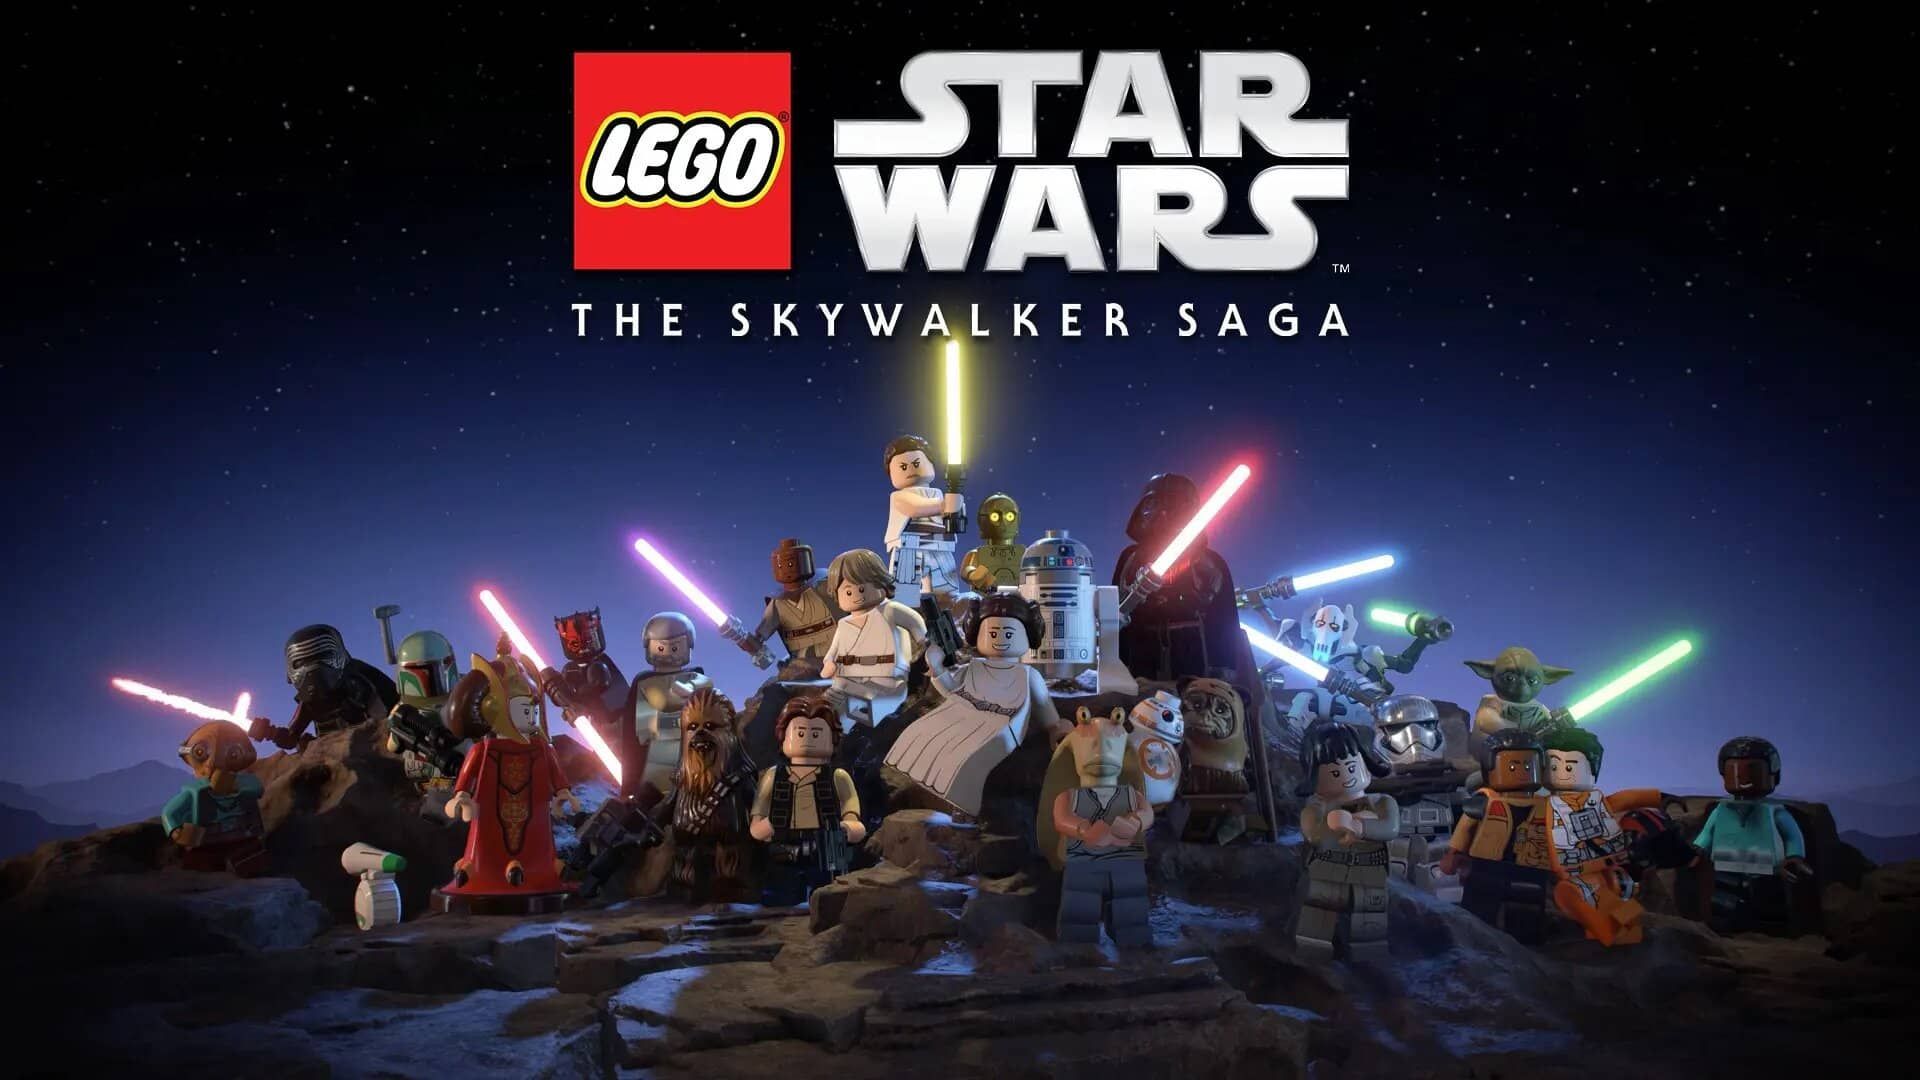 LEGO Star Wars Skywalker Saga : Poids, précommande, sortie, multijoueur... Toutes les infos